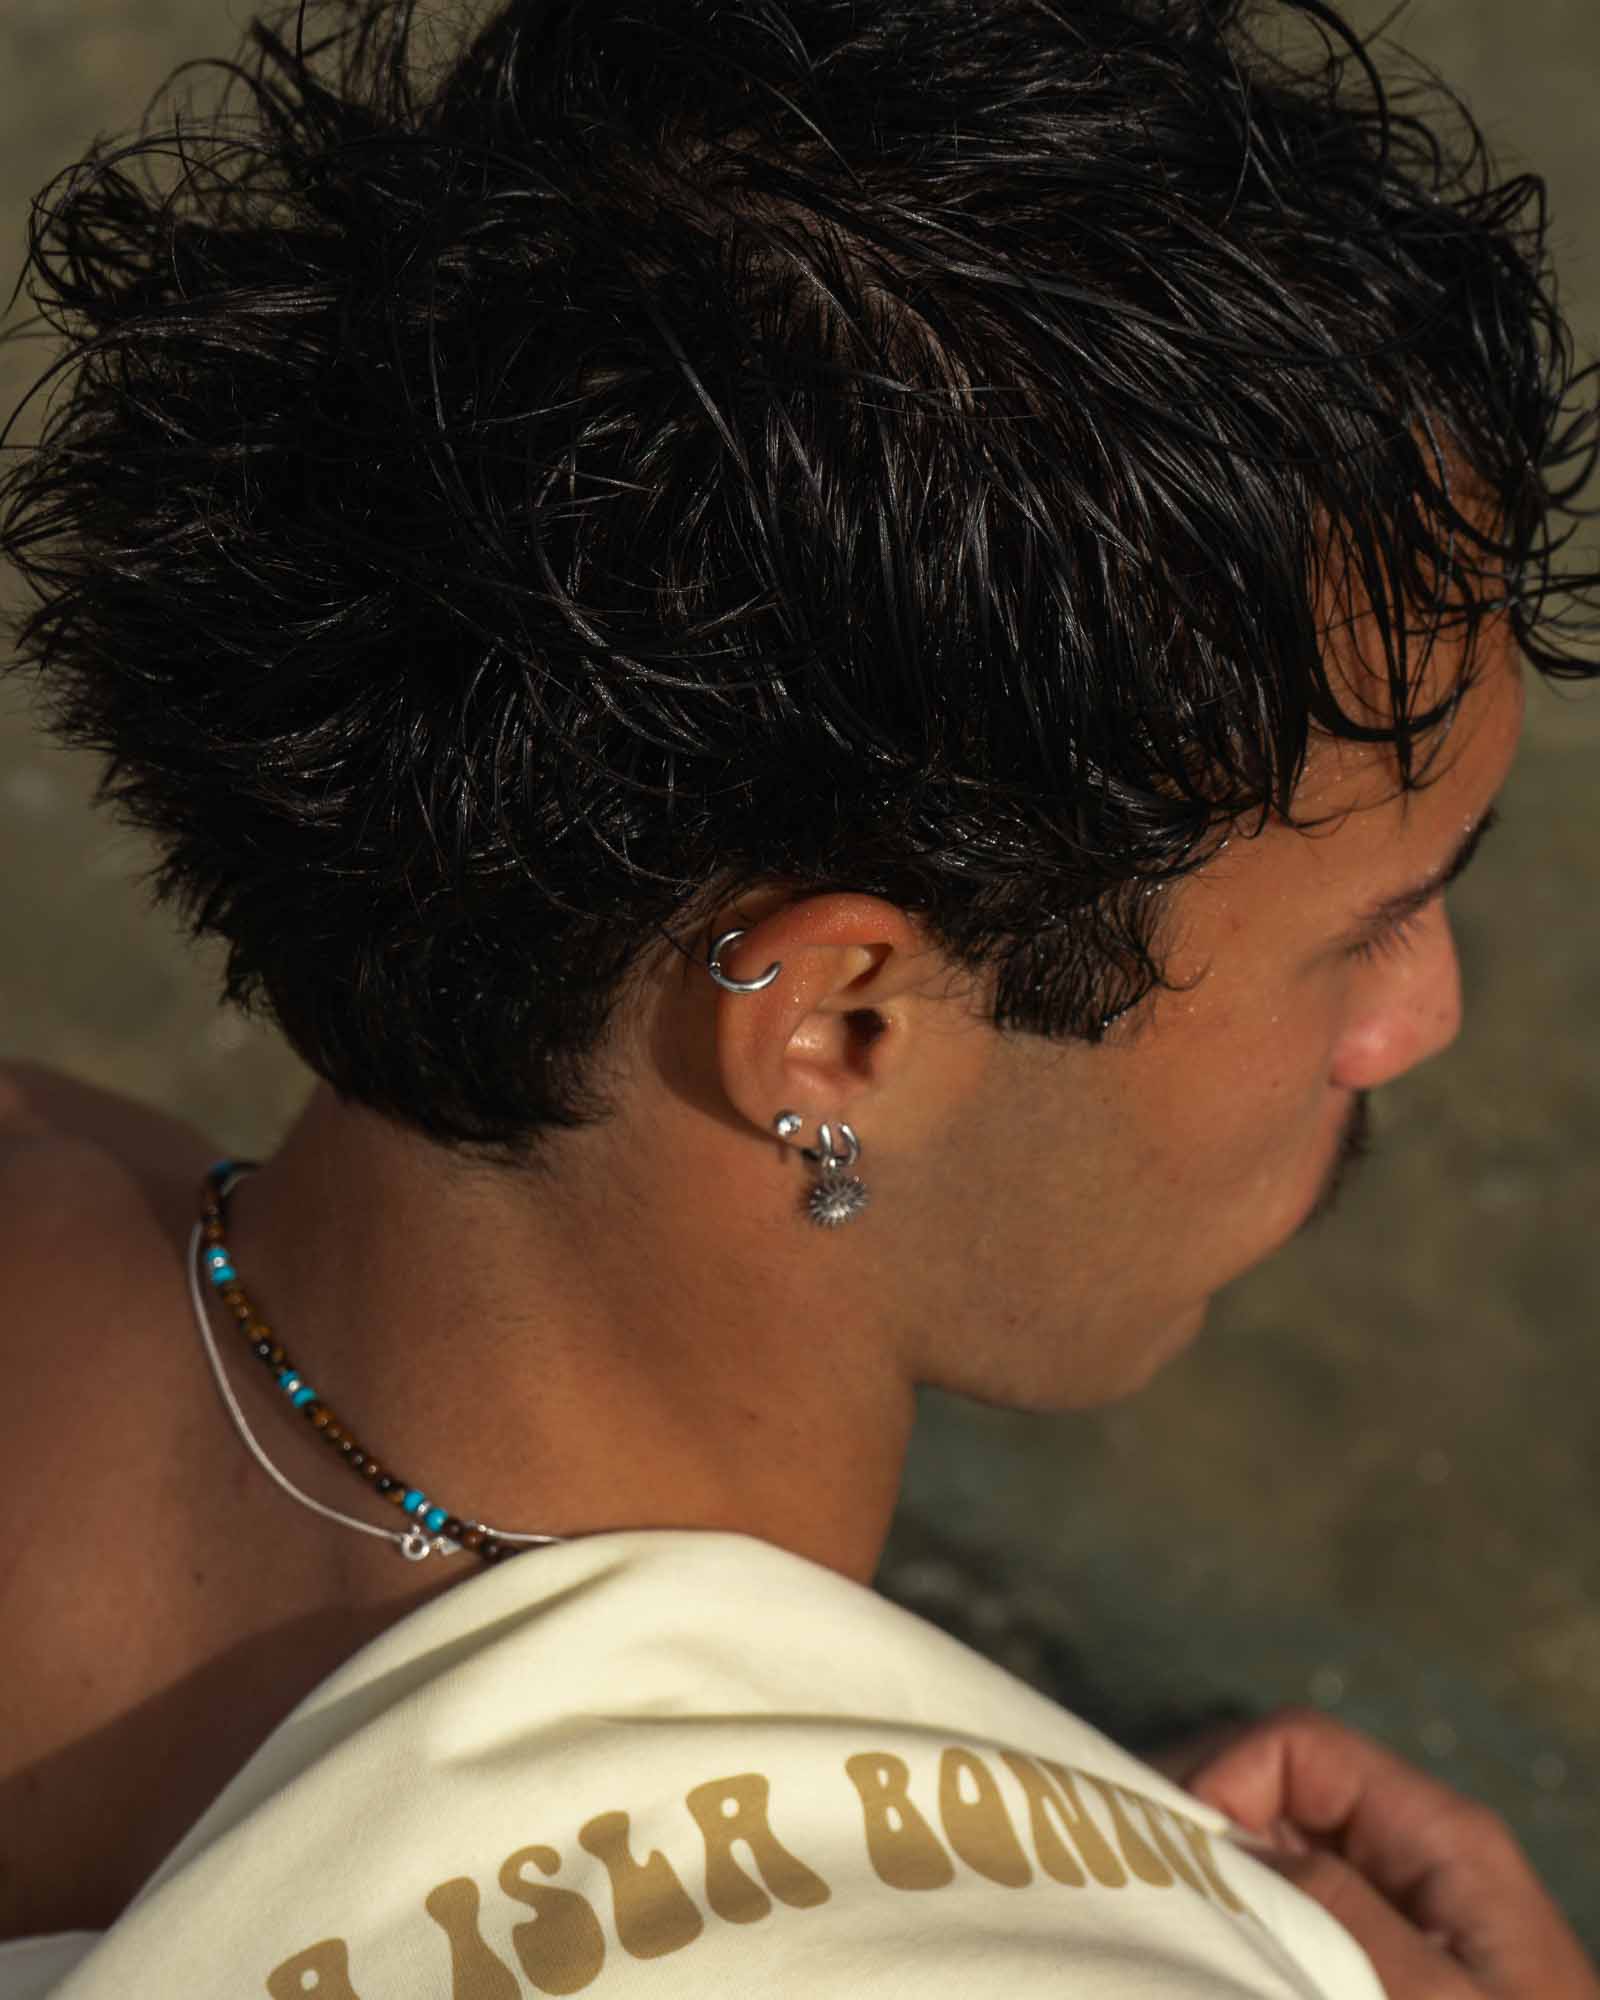 10mm stainless steel earring - Hoop earring in the helix area of the model's ear